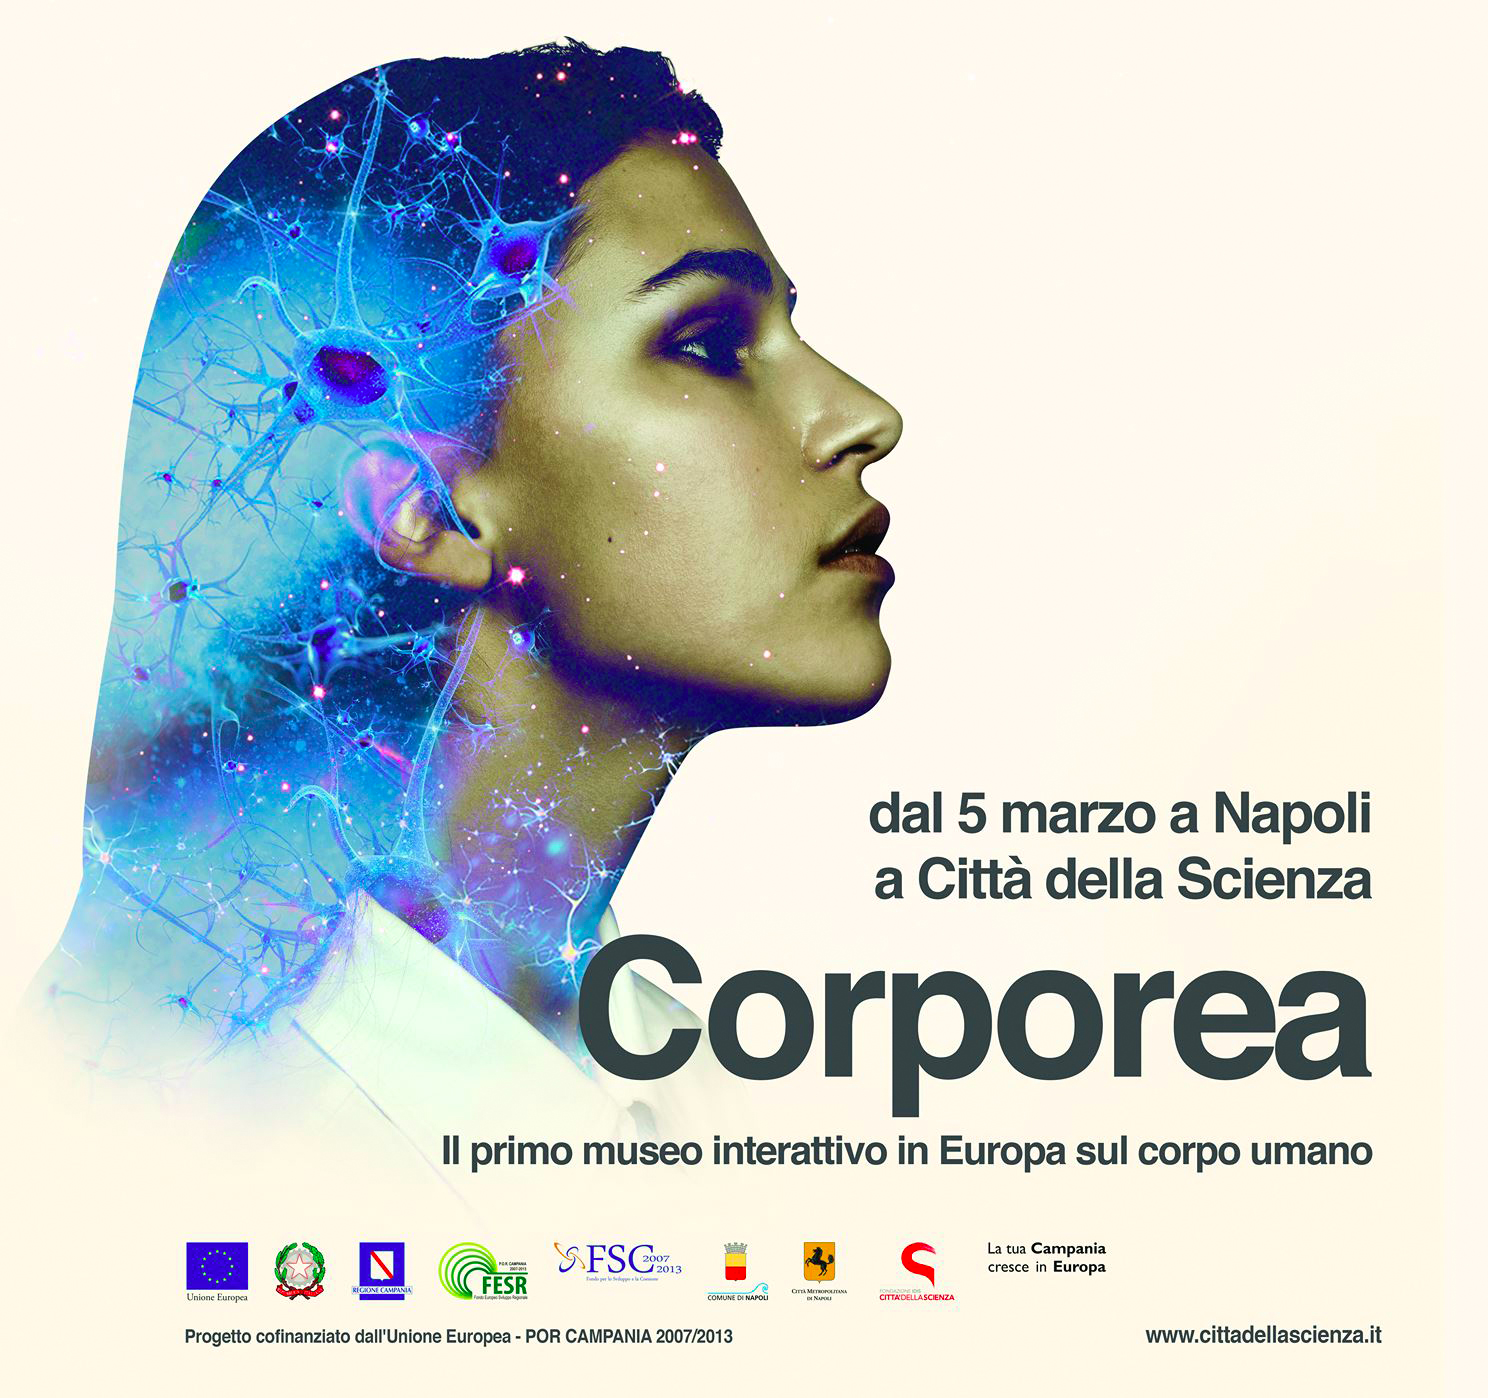 La locandina di Corporea, la mostra interattiva sul corpo umano inaugurata alla Città della Scienza di Napoli. Credit: Città della Scienza.